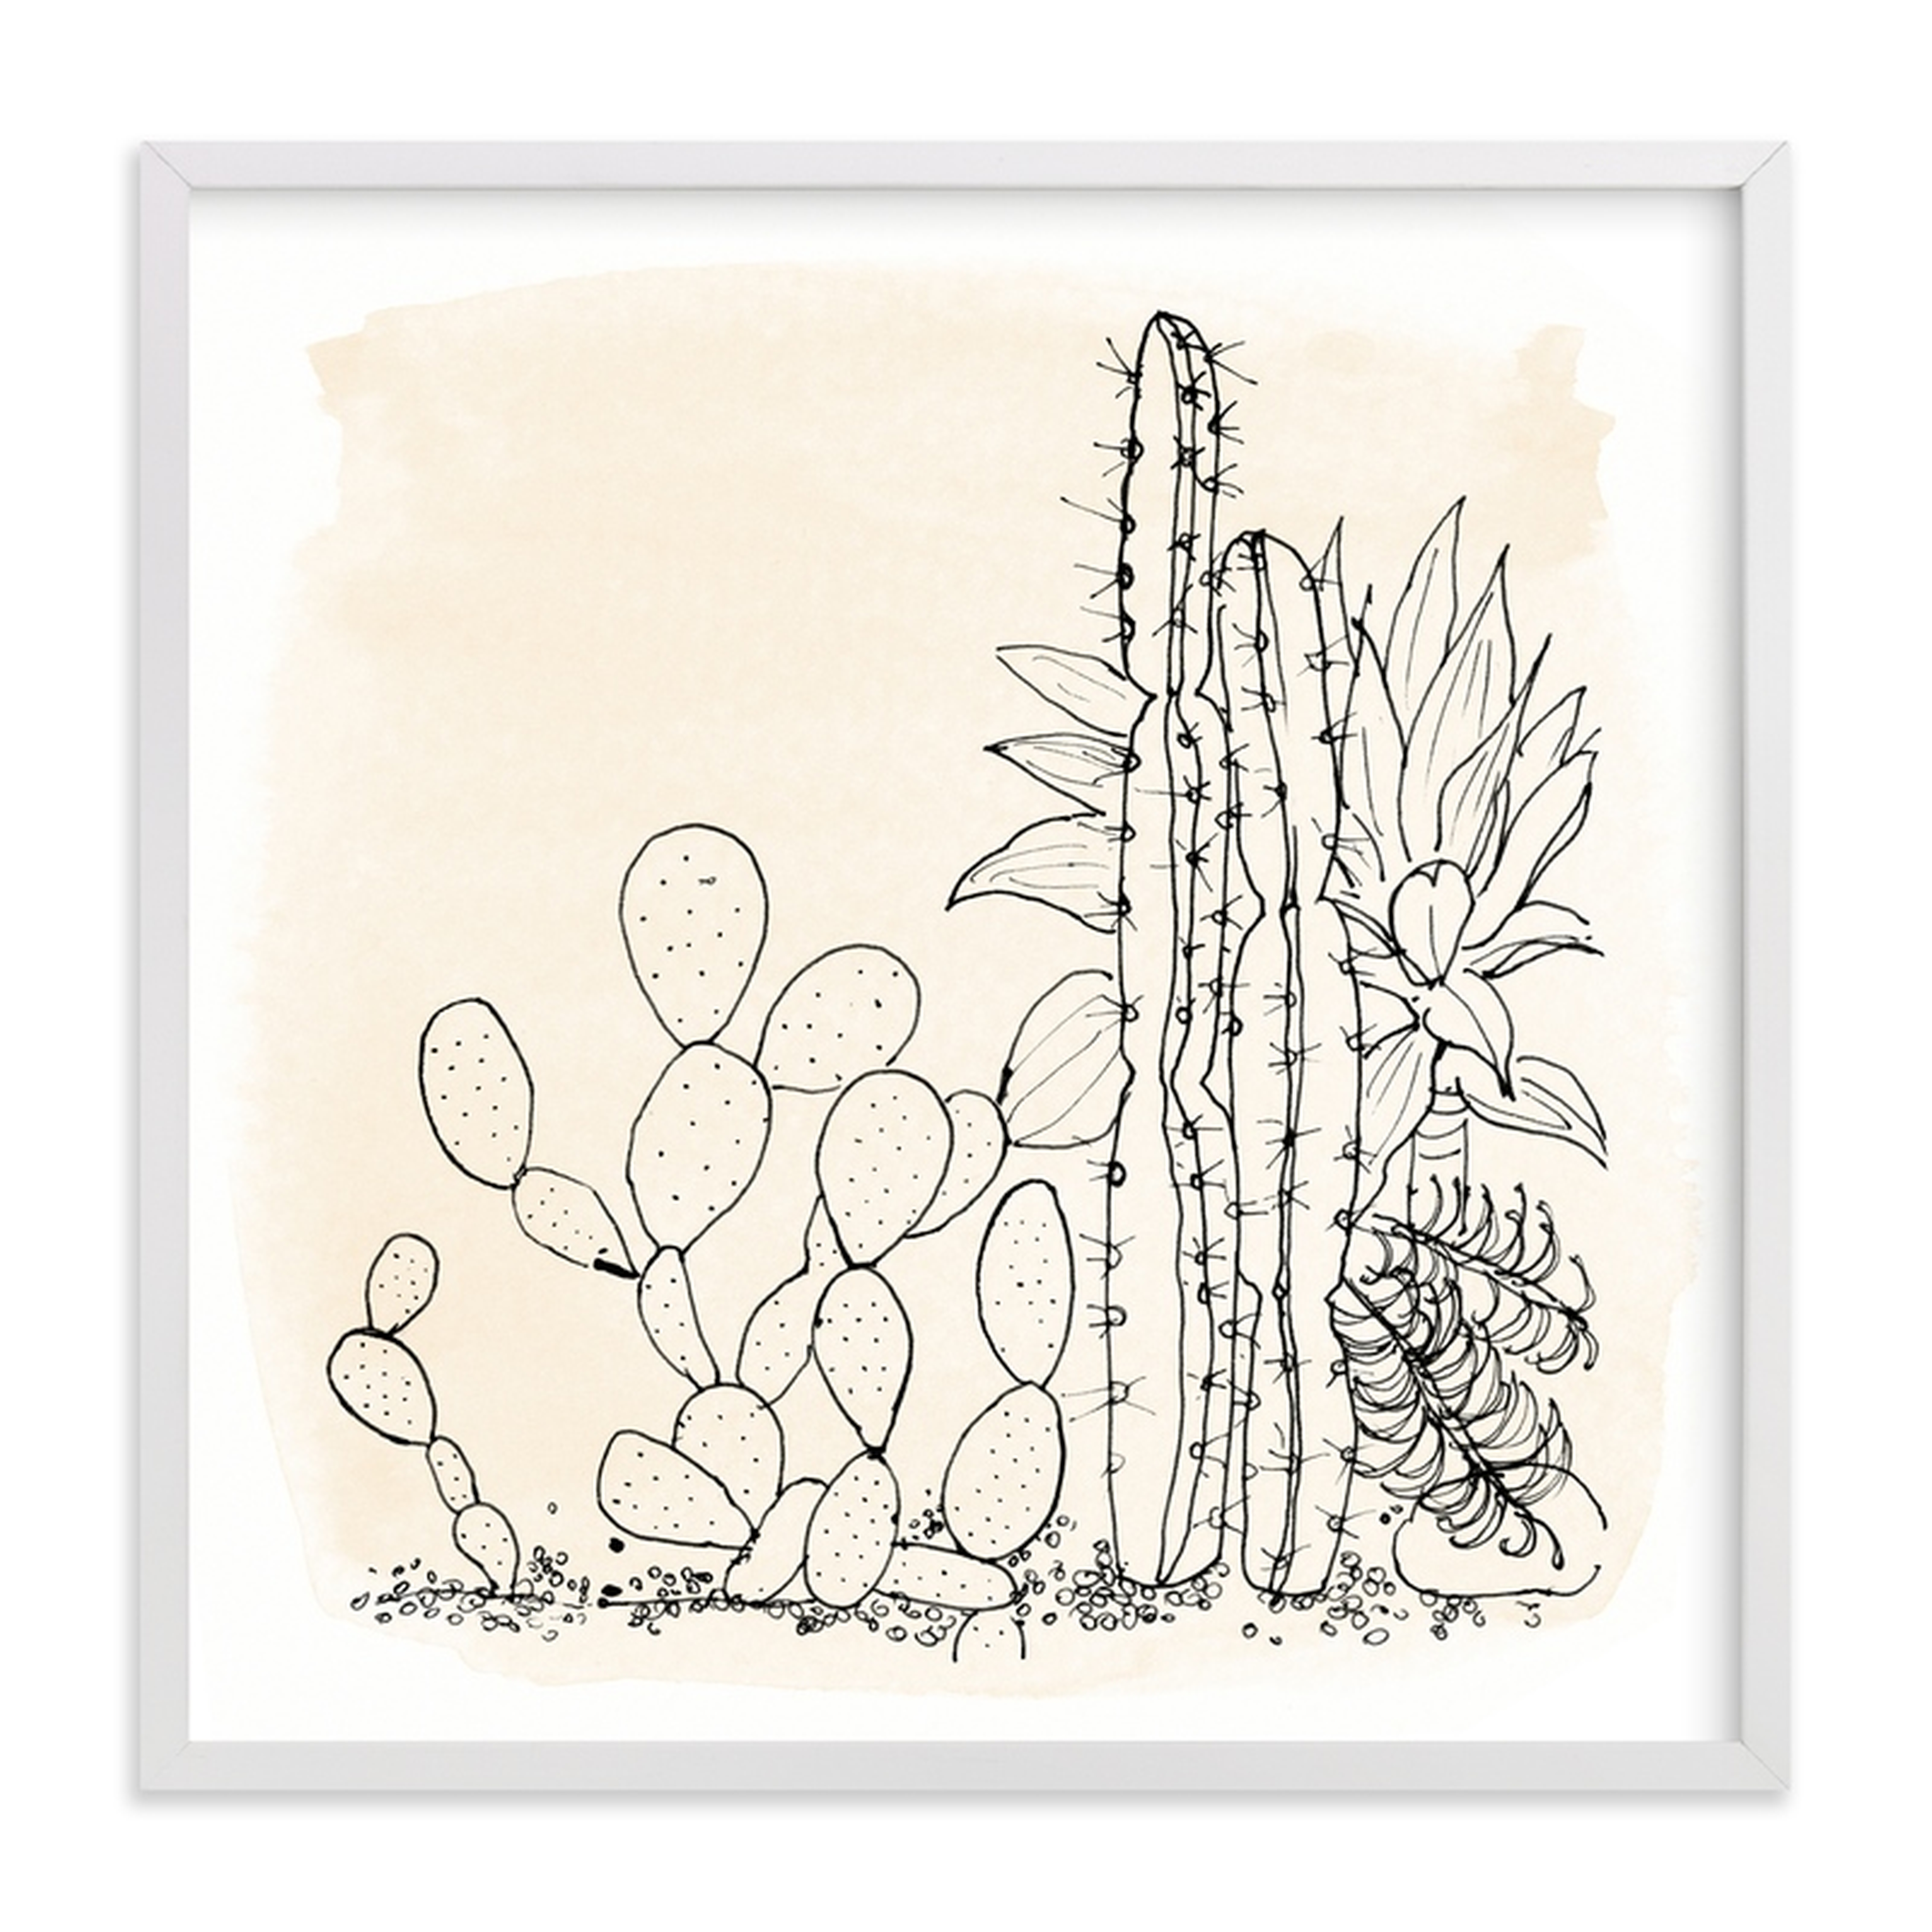 my cactus garden,16" X 16" - Minted